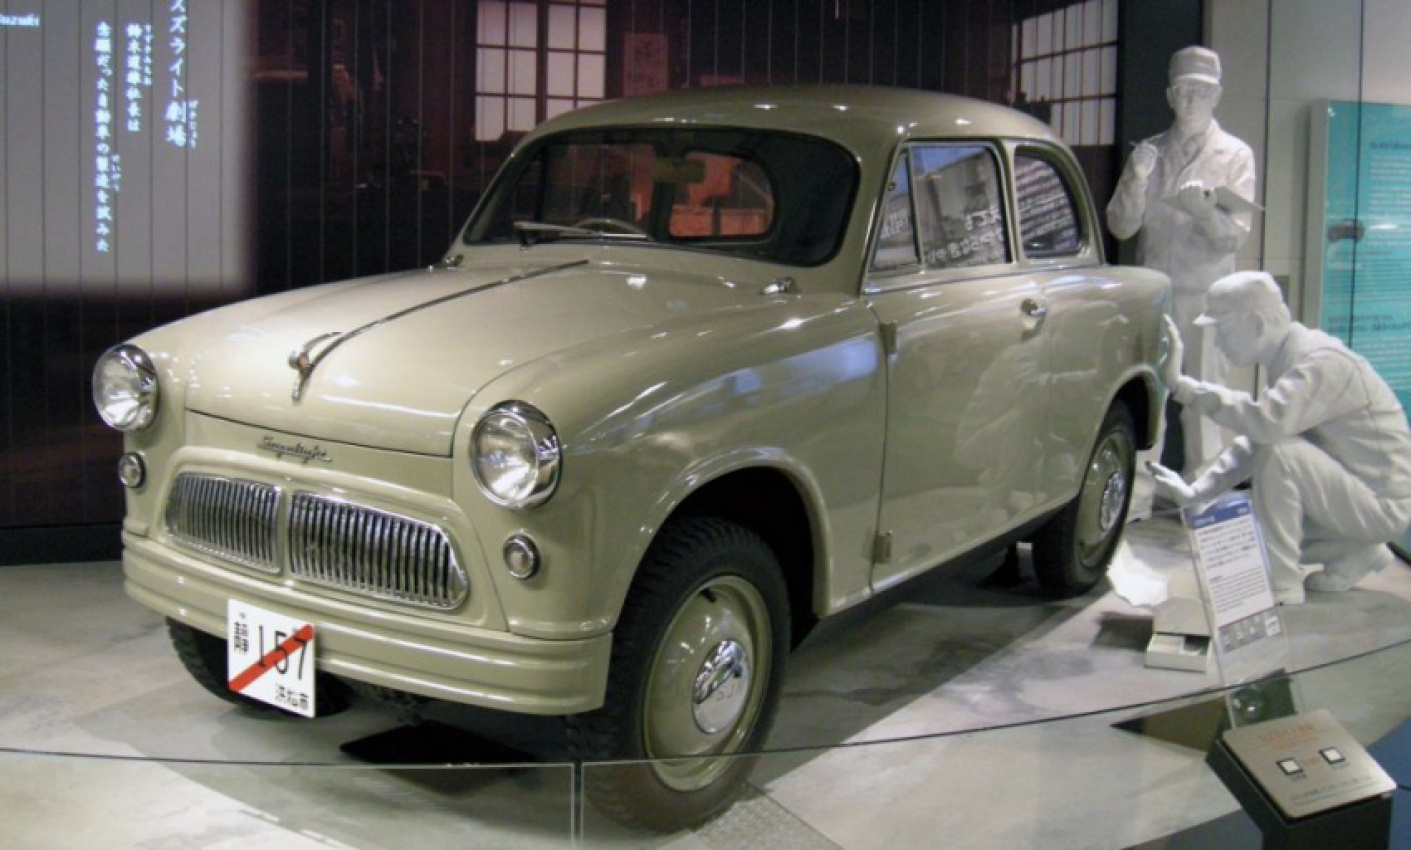 autos, cars, suzuki, autos suzuki, suzulight sparked success for suzuki